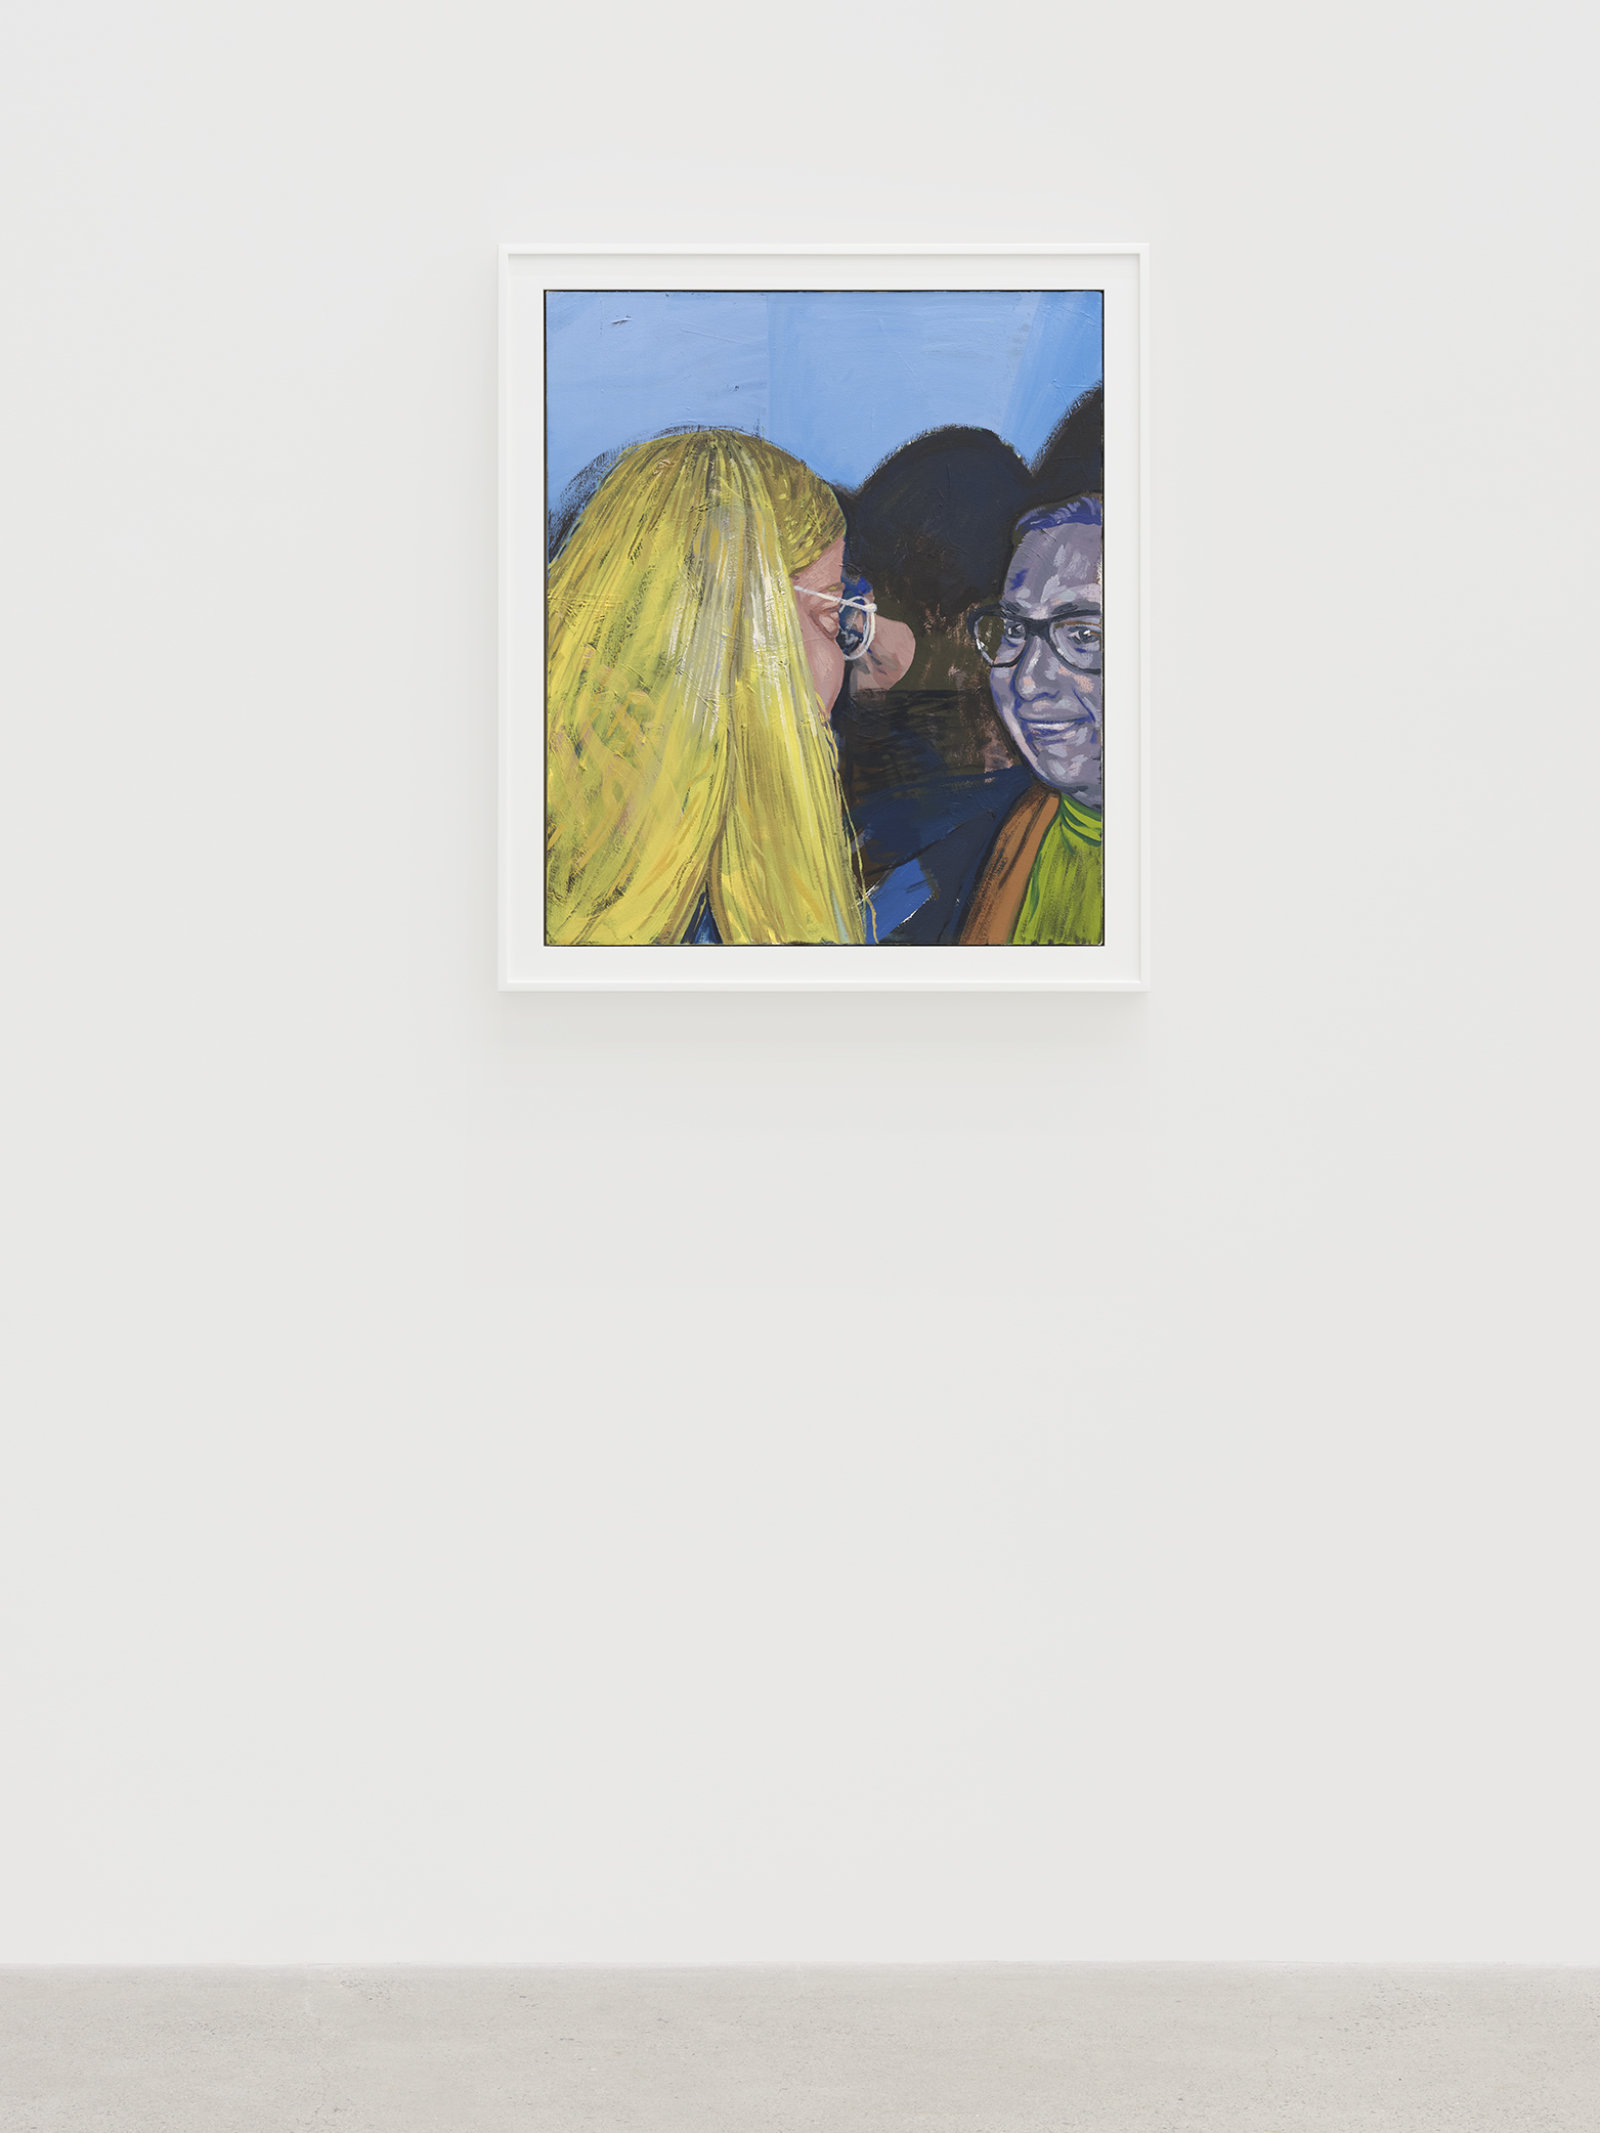 Damian Moppett, Little Blonde Head, 2020, oil on canvas, 32 x 27 in. (81 x 69 cm)